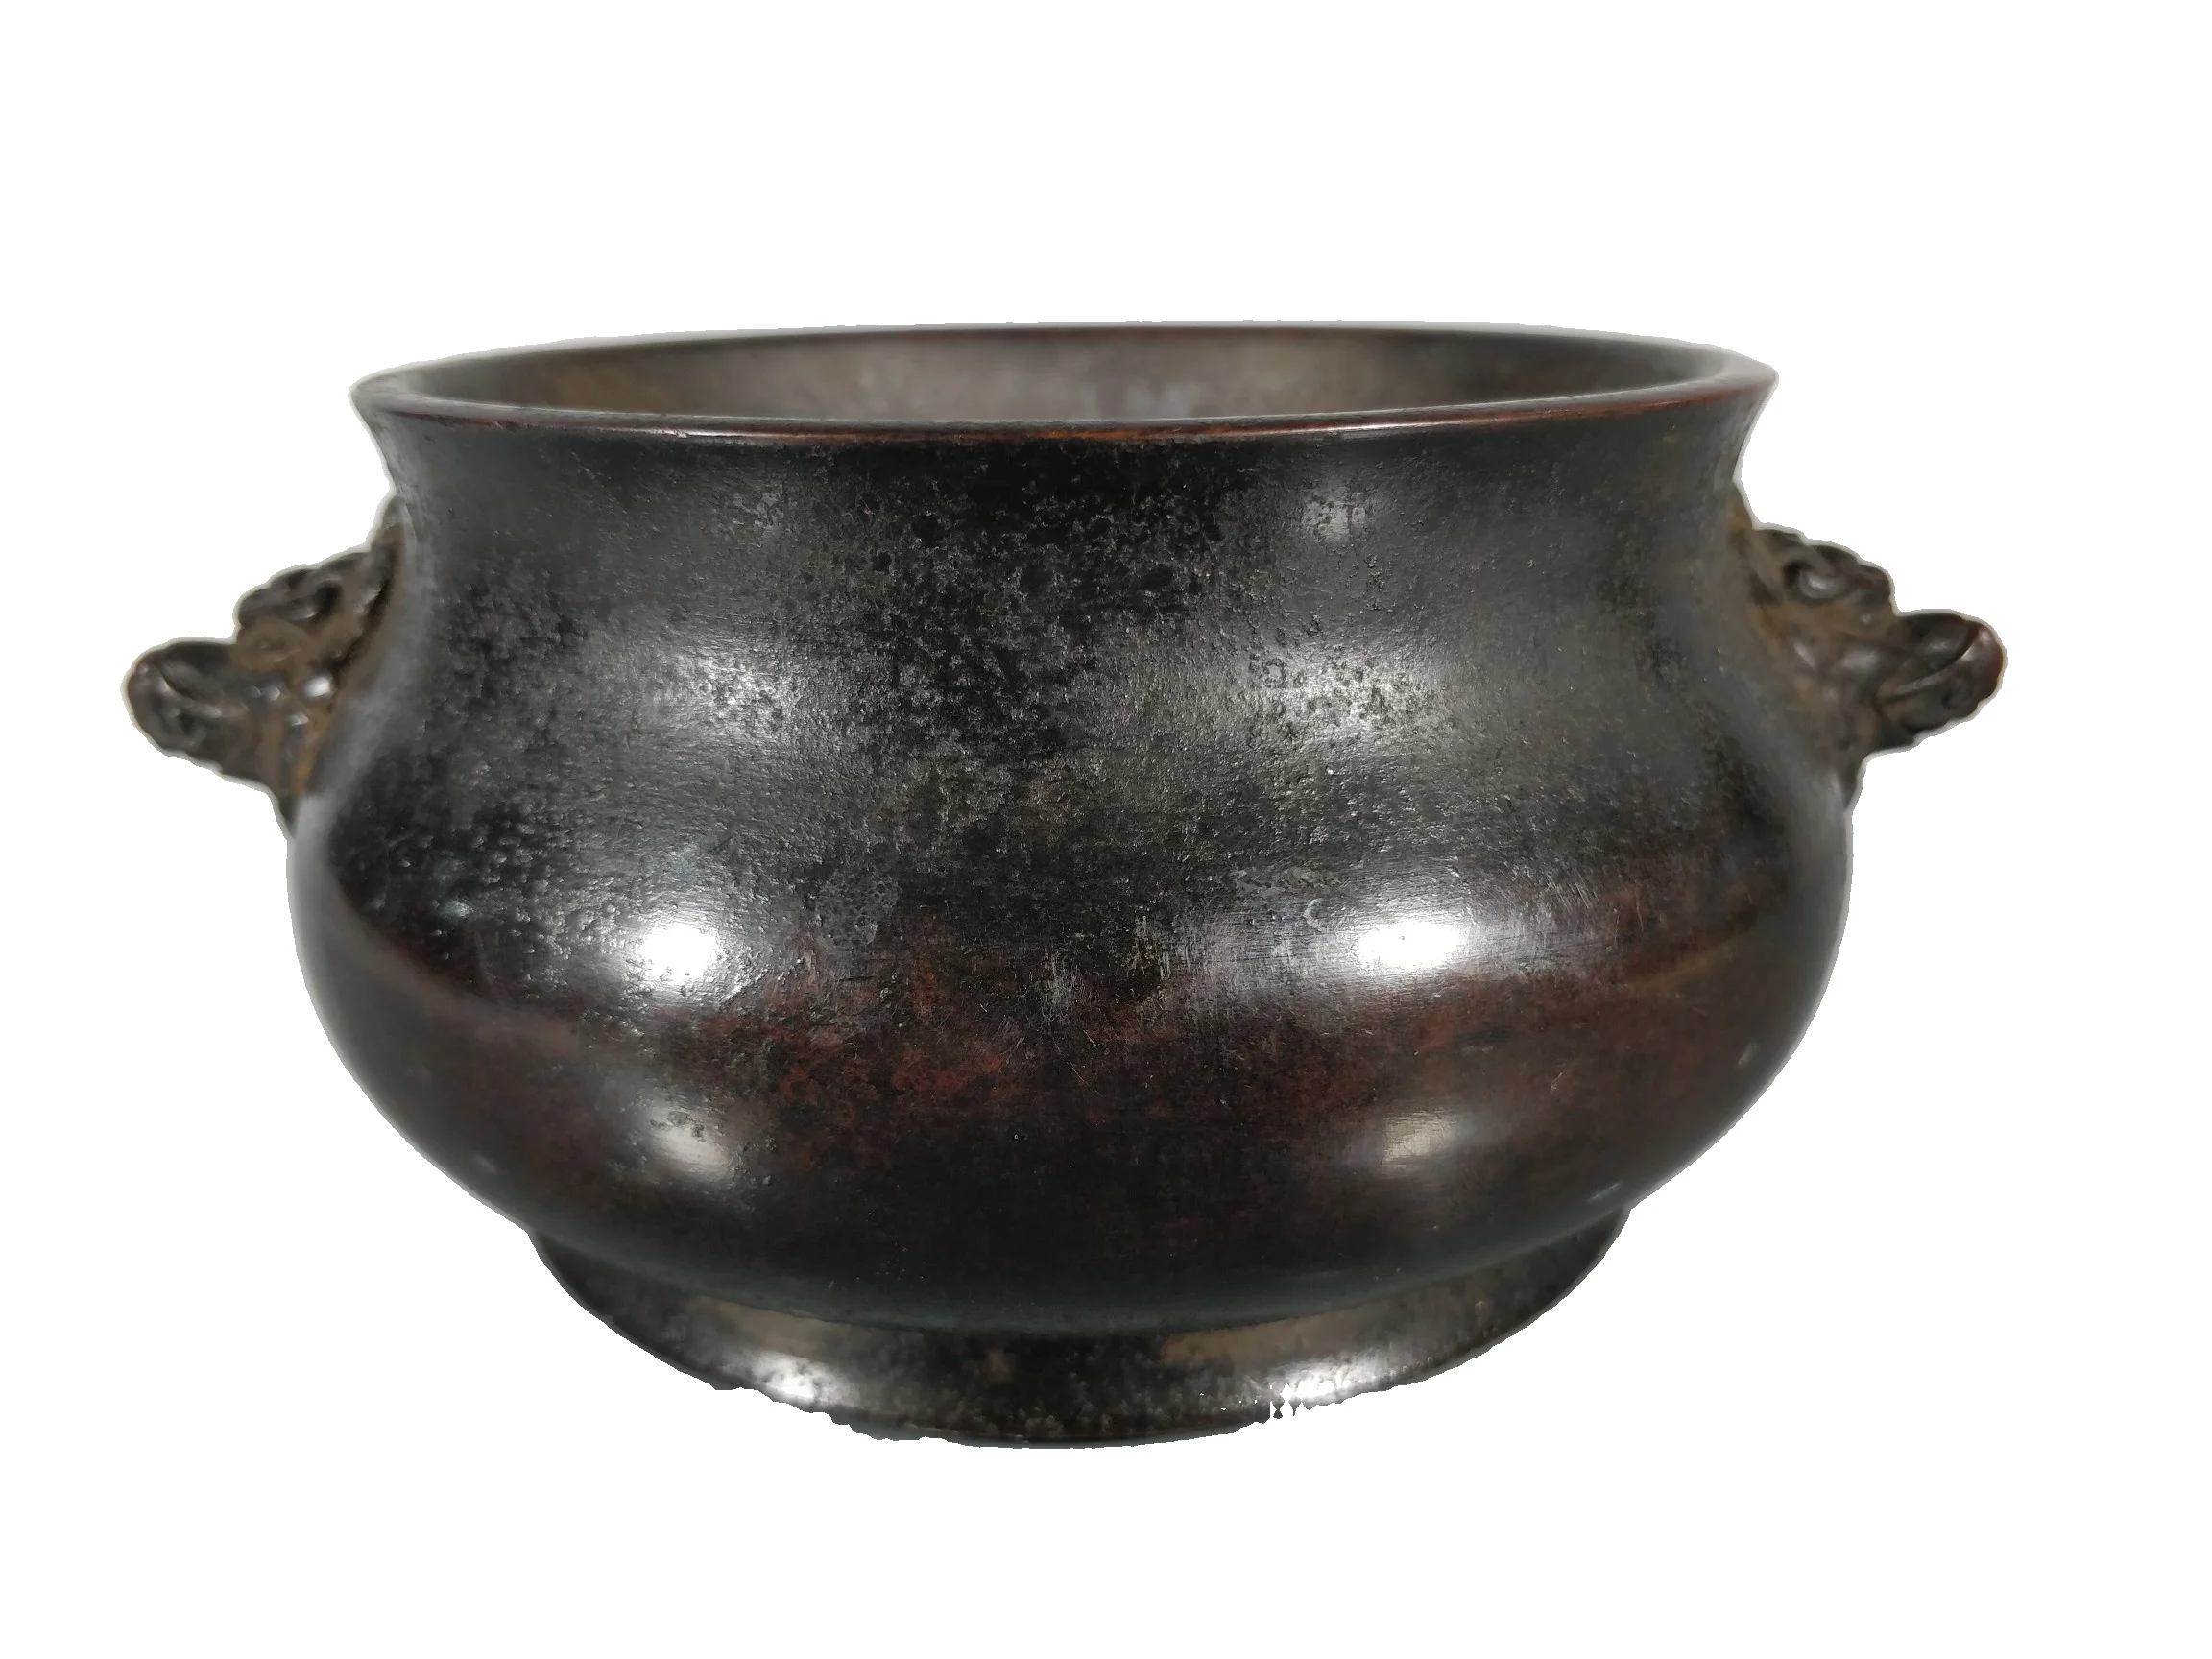 

Laojunlu Античная бронзовая плита, имитация античной бронзы, коллекция шедевров, ювелирные изделия в традиционном китайском стиле